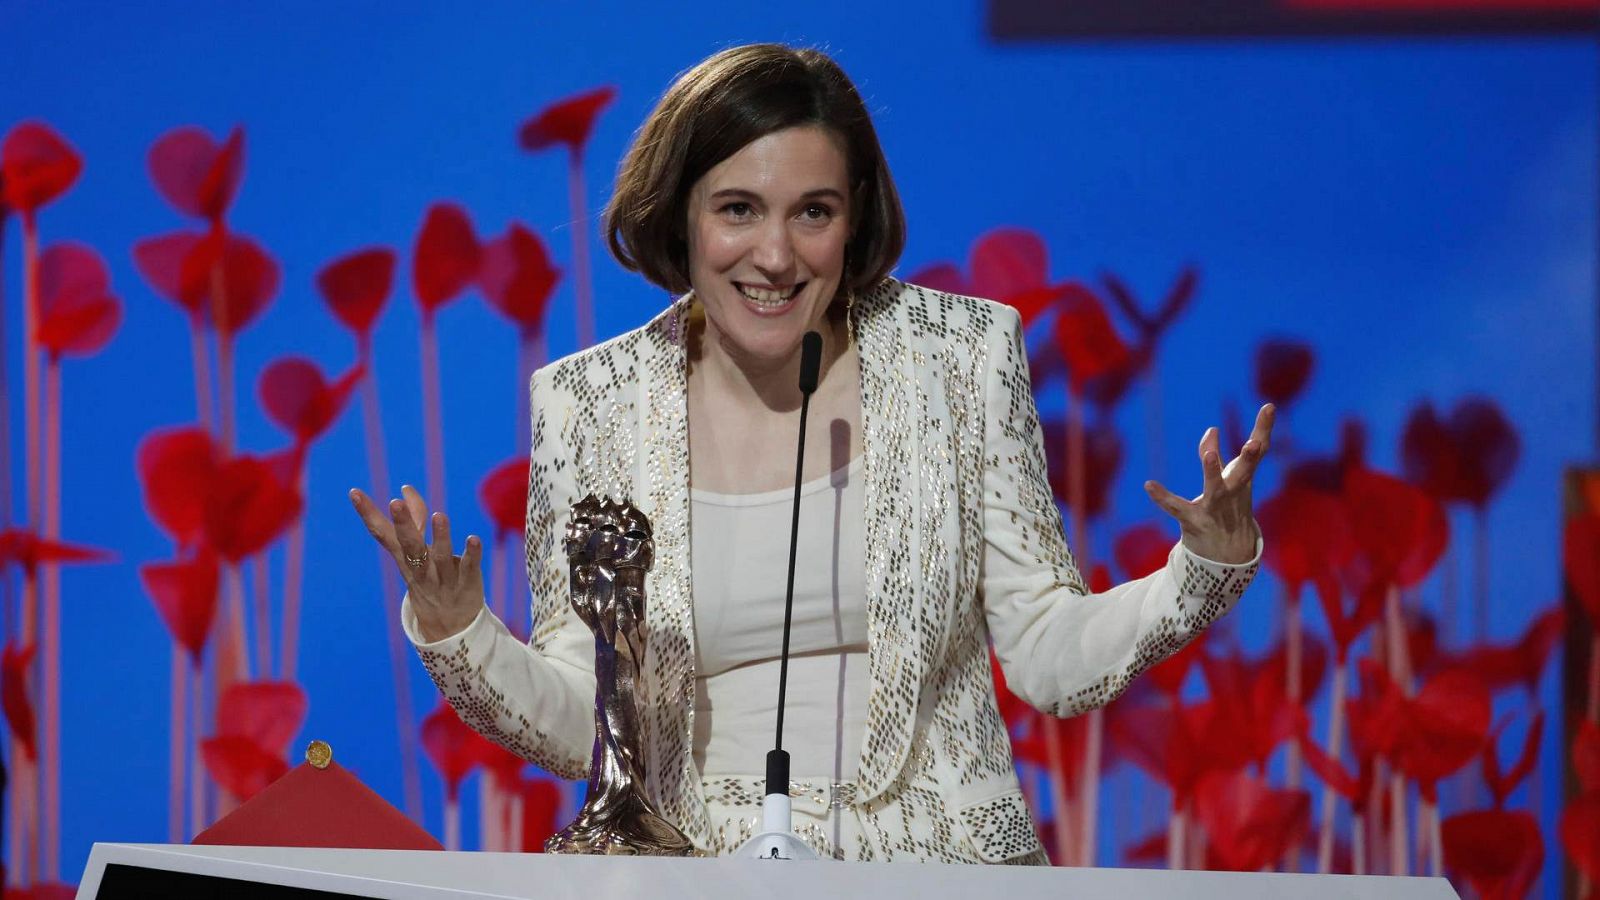 La directora Carla Simón recibe el premio a la Mejor Dirección por 'Alcarrás', durante la gala de los Premios Gaudí 2023.